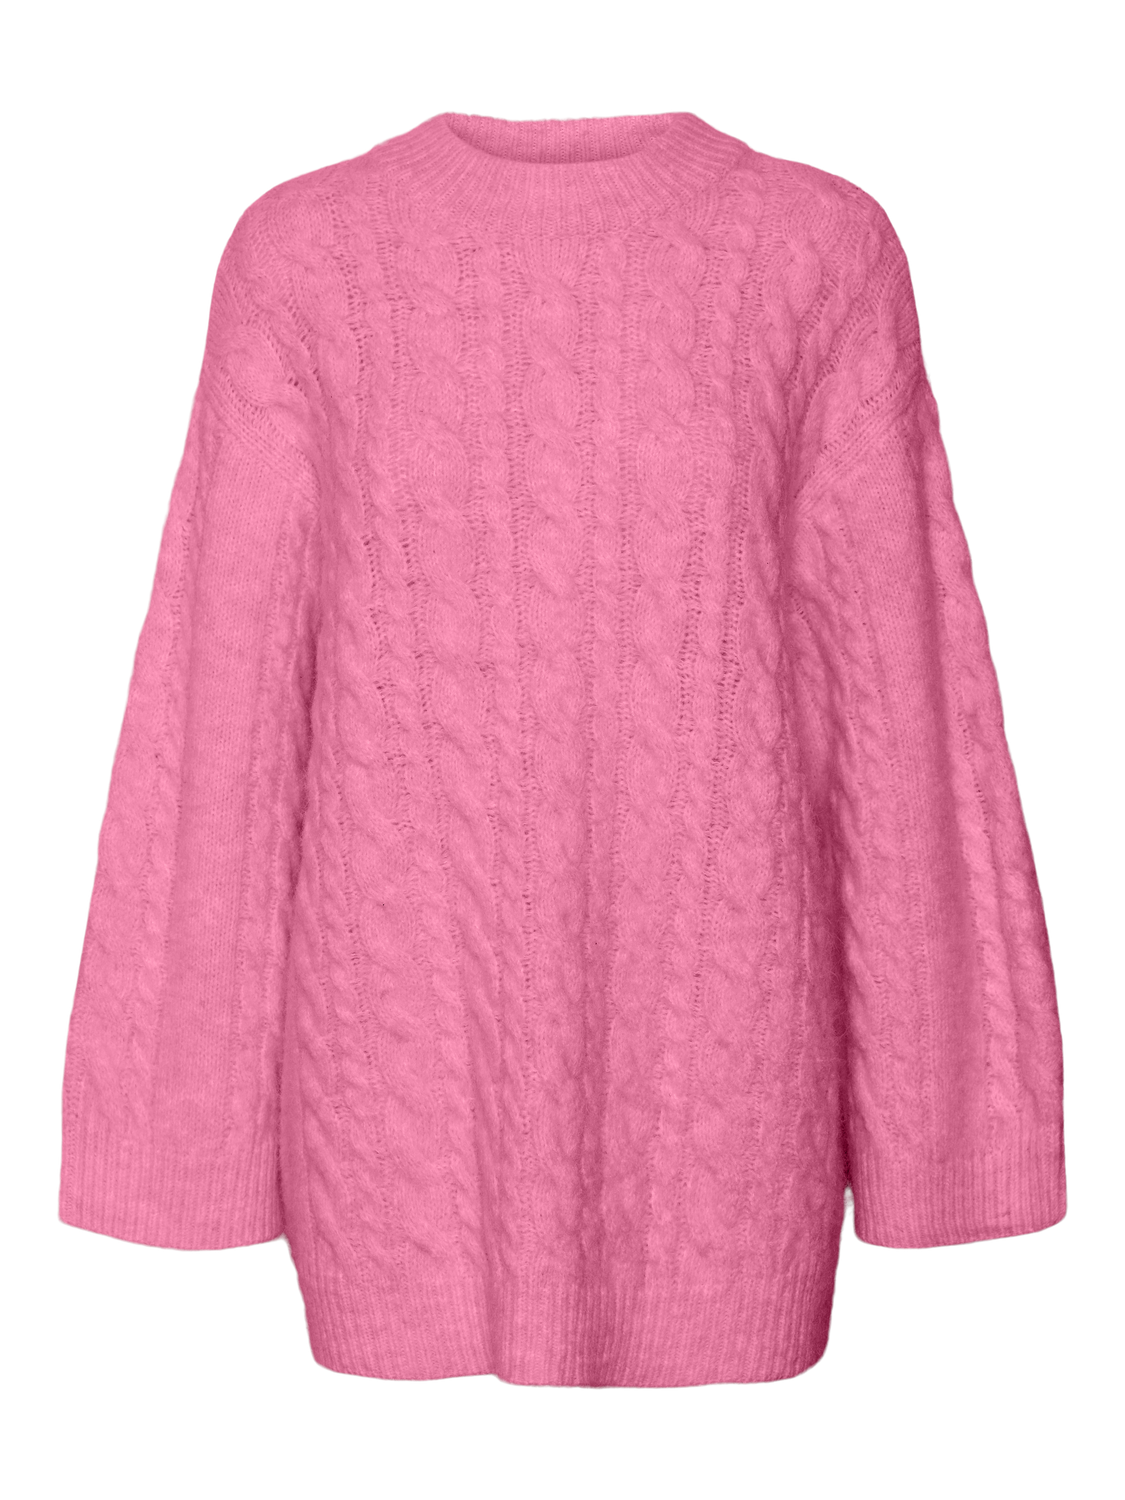 VMCOBALTINE Pullover - Sachet Pink